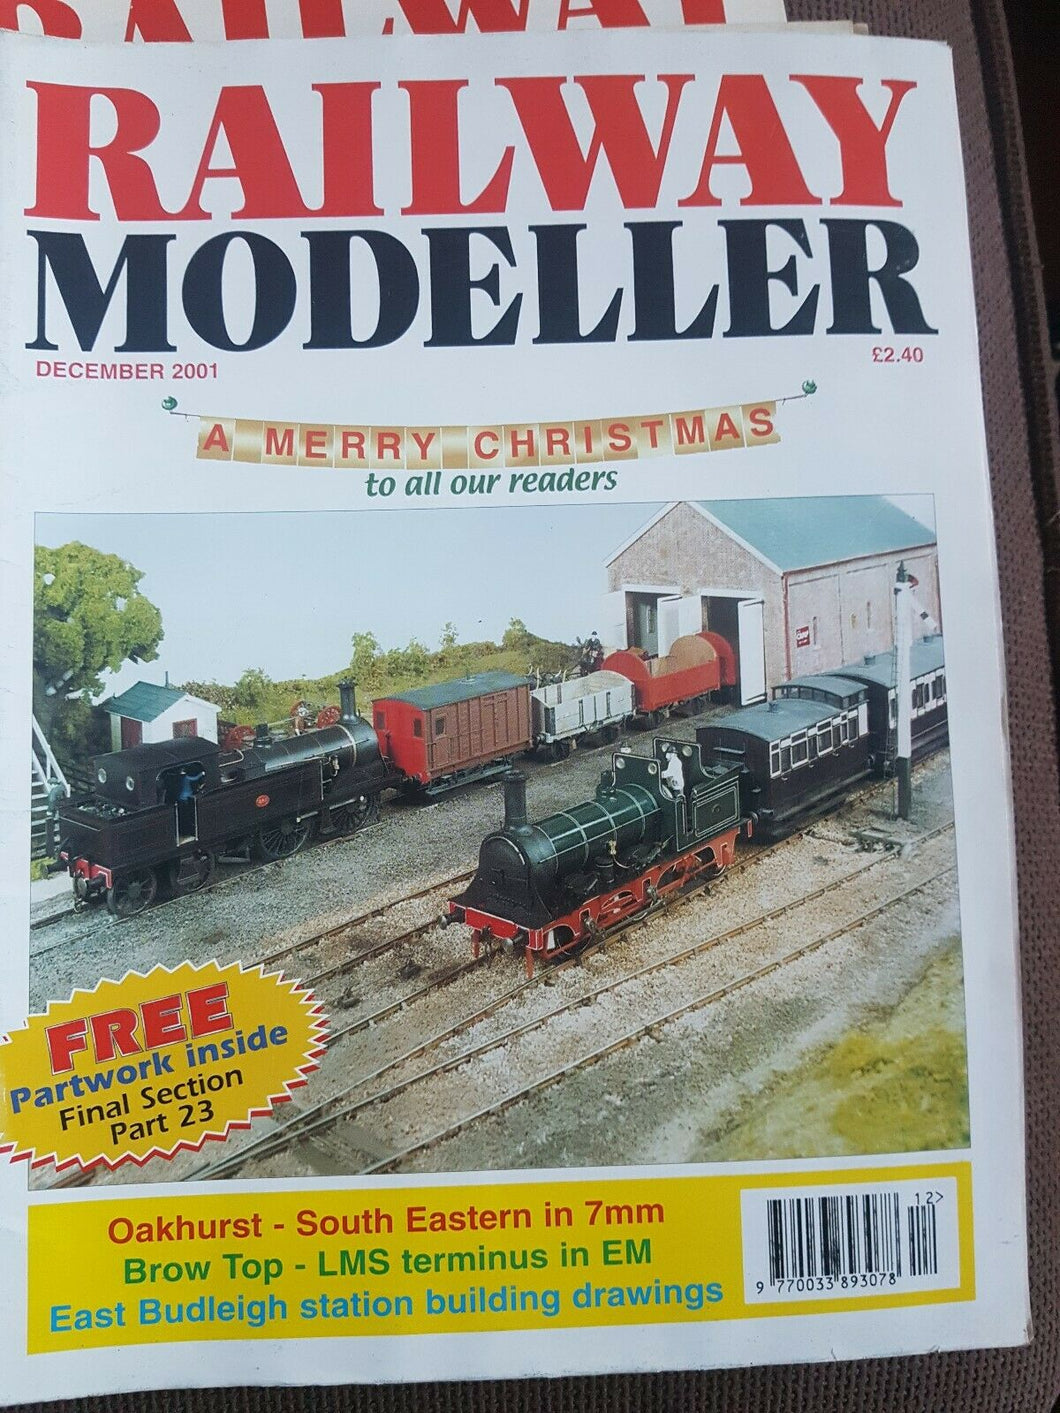 Railway modeller magazine December 2001